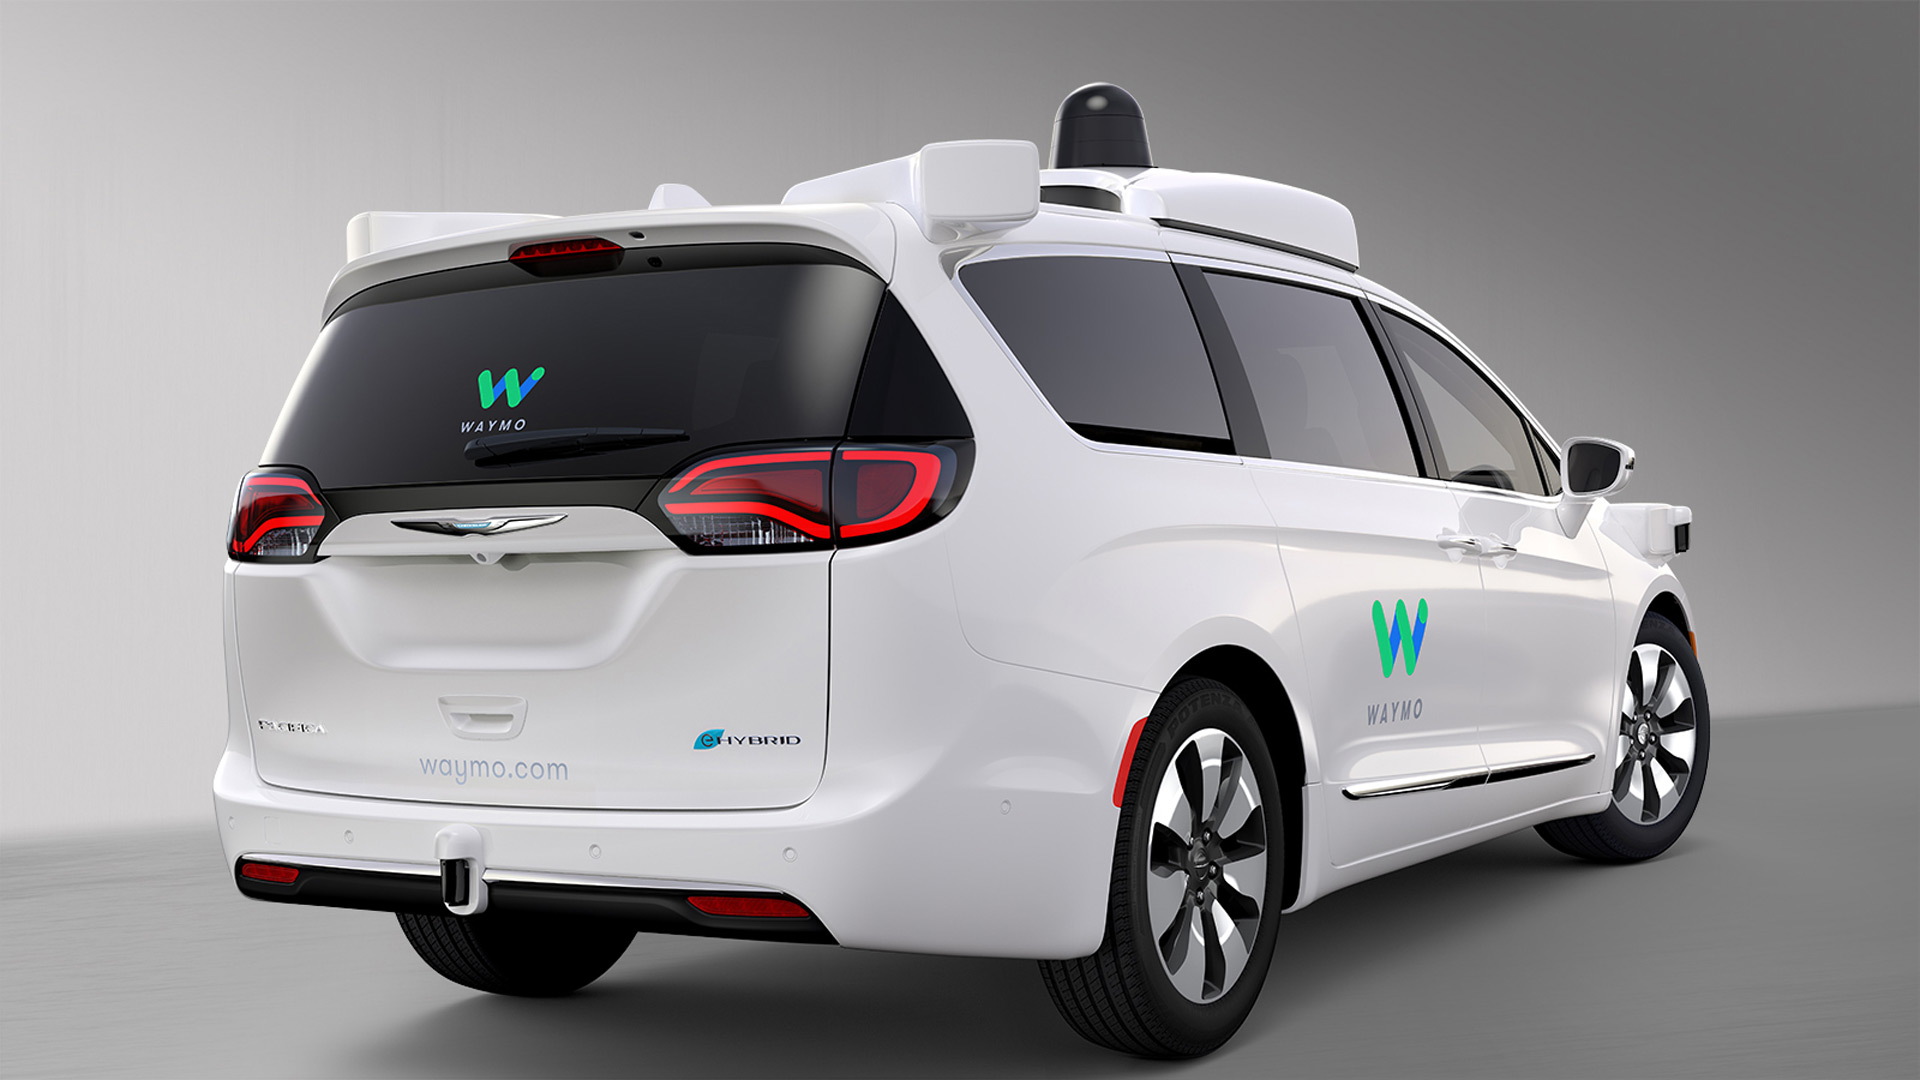 Waymo self-driving prototype